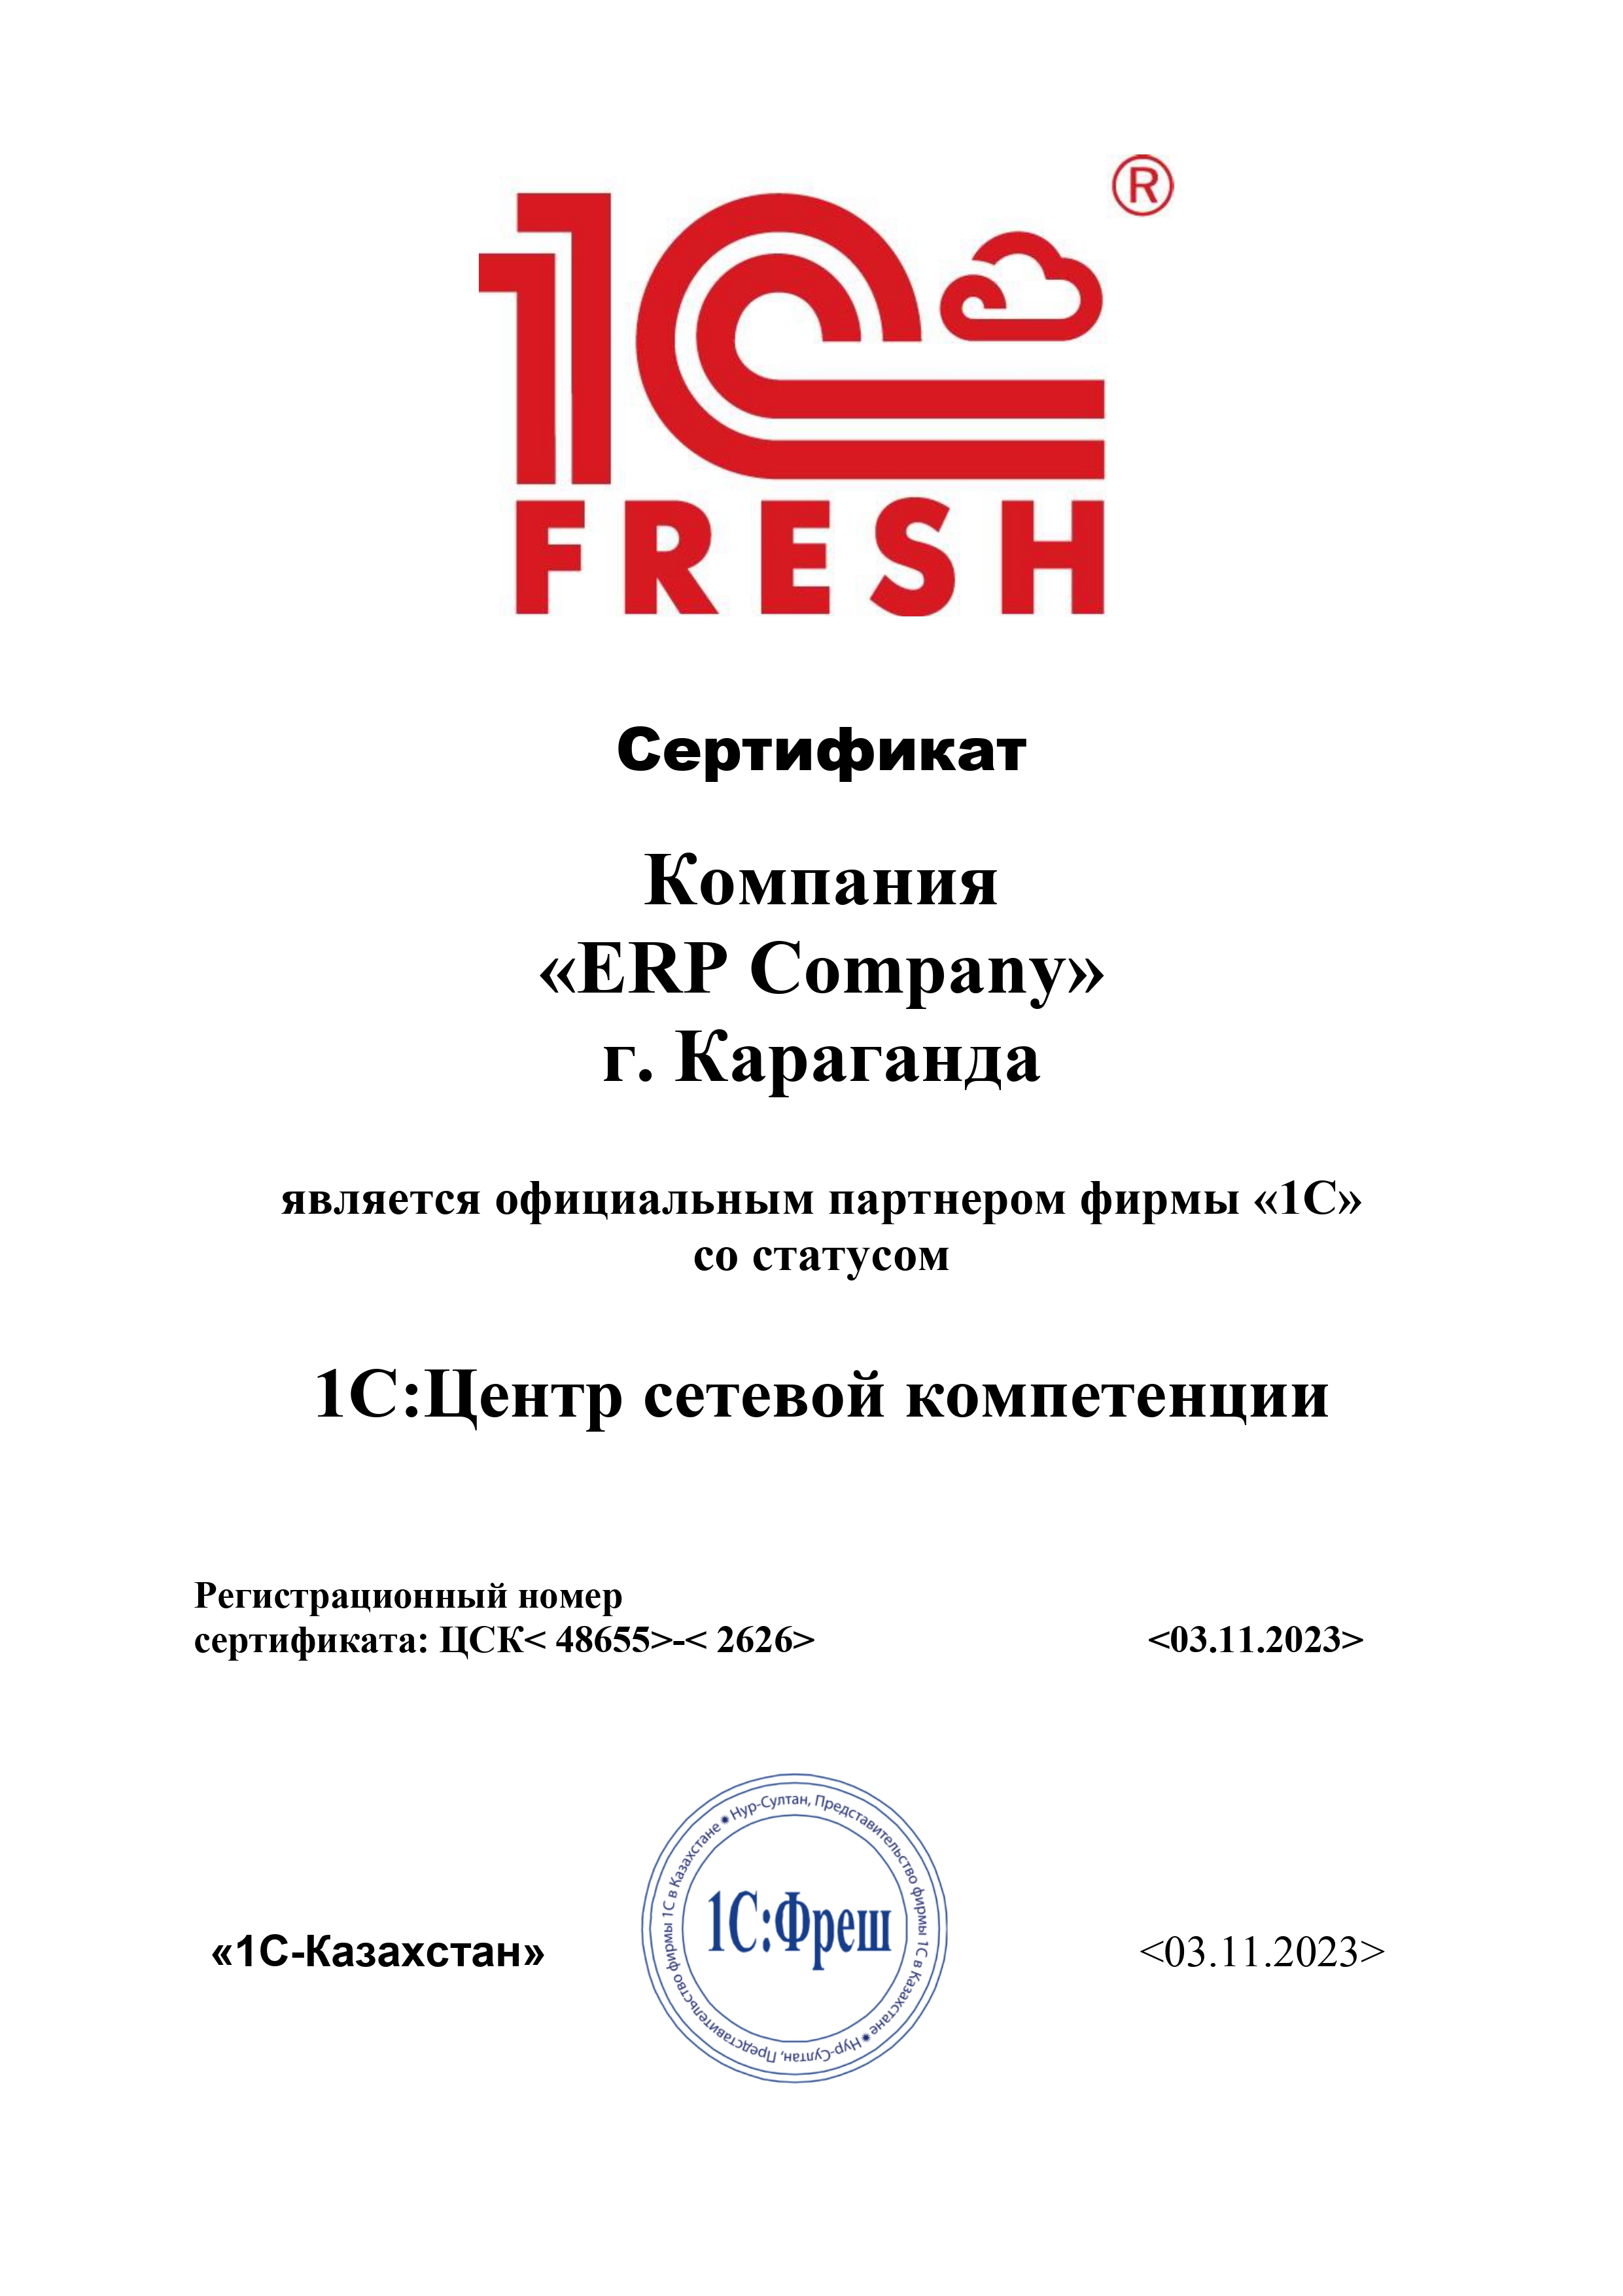 Группа Компаний «ERP» получила статус 1C:Центр сетевой компетенции